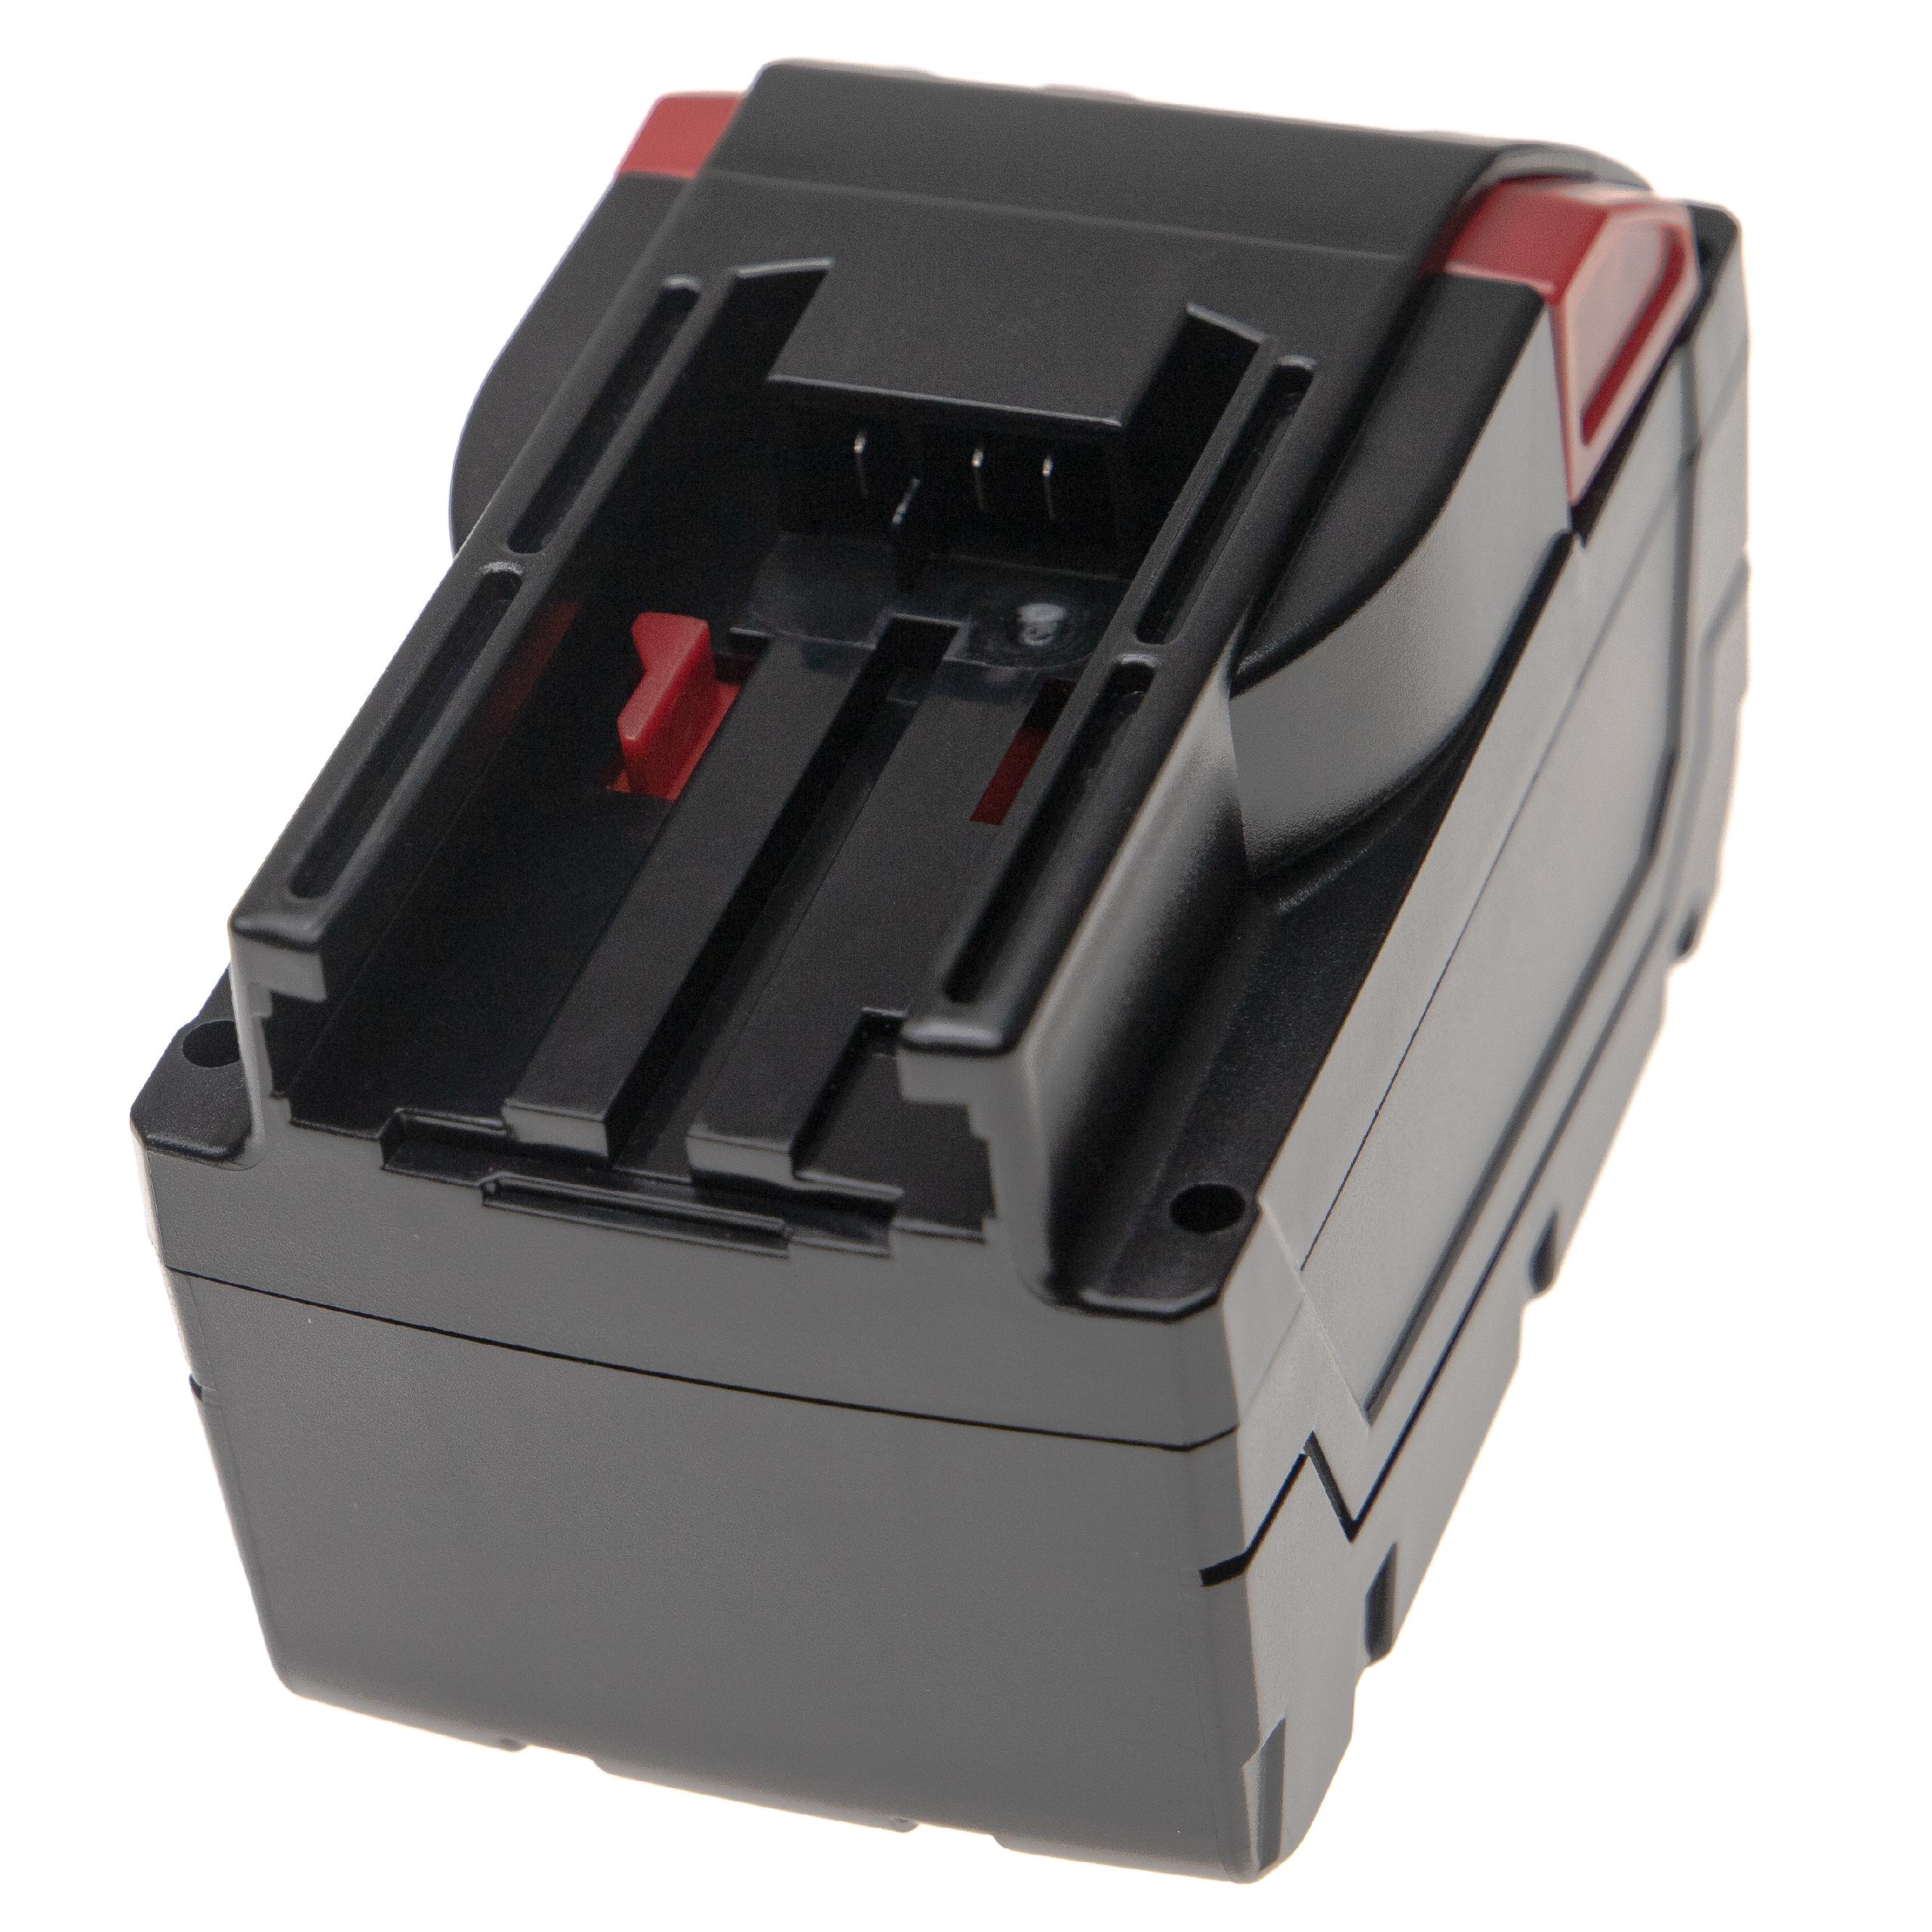 Batterie remplace AEG / Milwaukee 48-11-2830, 48-11-1830 pour outil électrique - 6000 mAh, 28 V, Li-ion